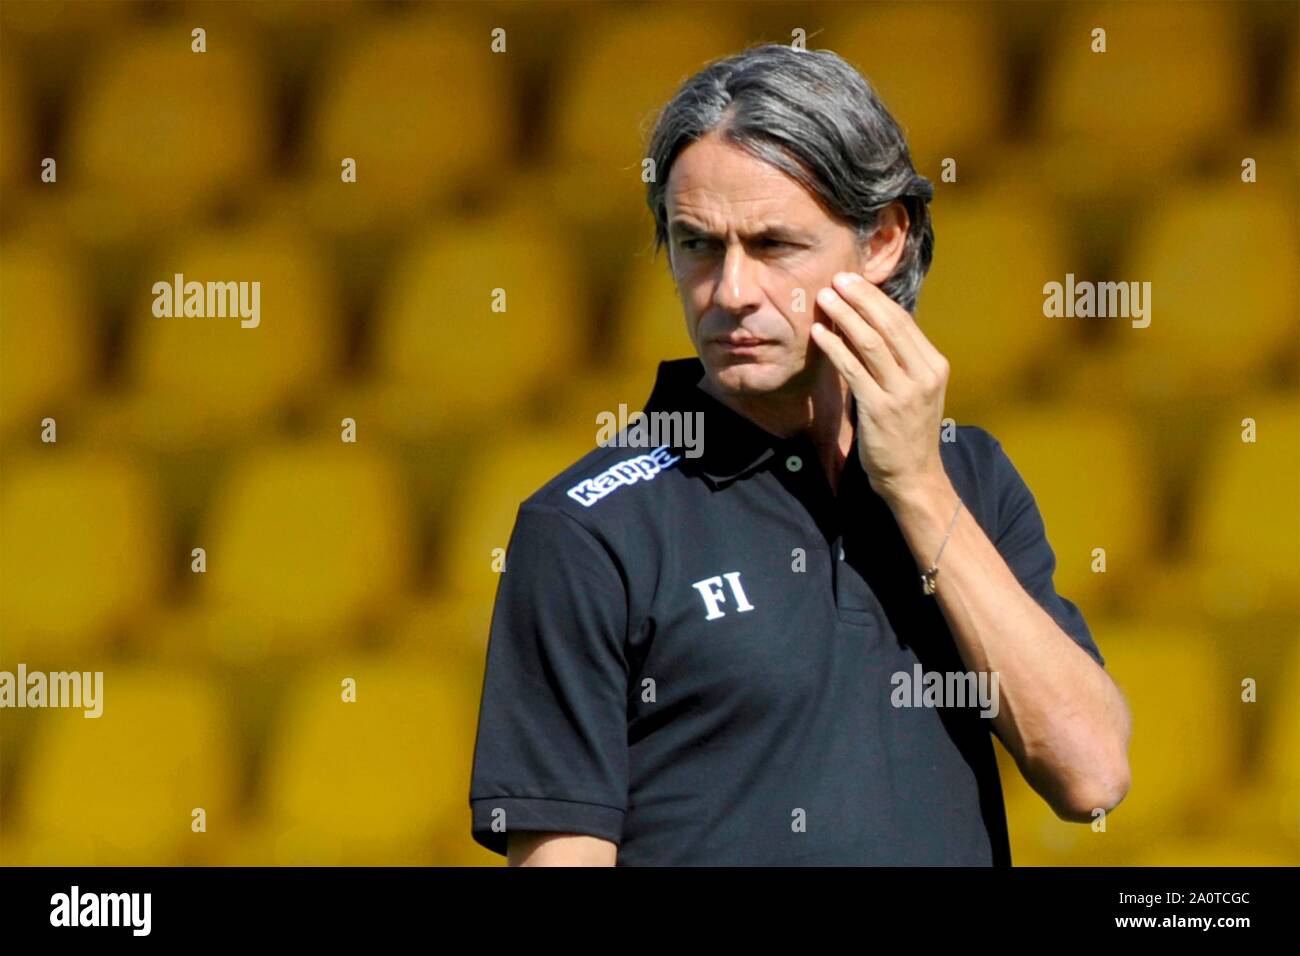 Benevento - Cosenza 1-0, Serie B, stadio Ciro Vigorito 21/09/2019, Filippo inzaghi allenatore del Benevento Benevento - Cosenza 1-0, Serie B, Ciro Vig Stock Photo